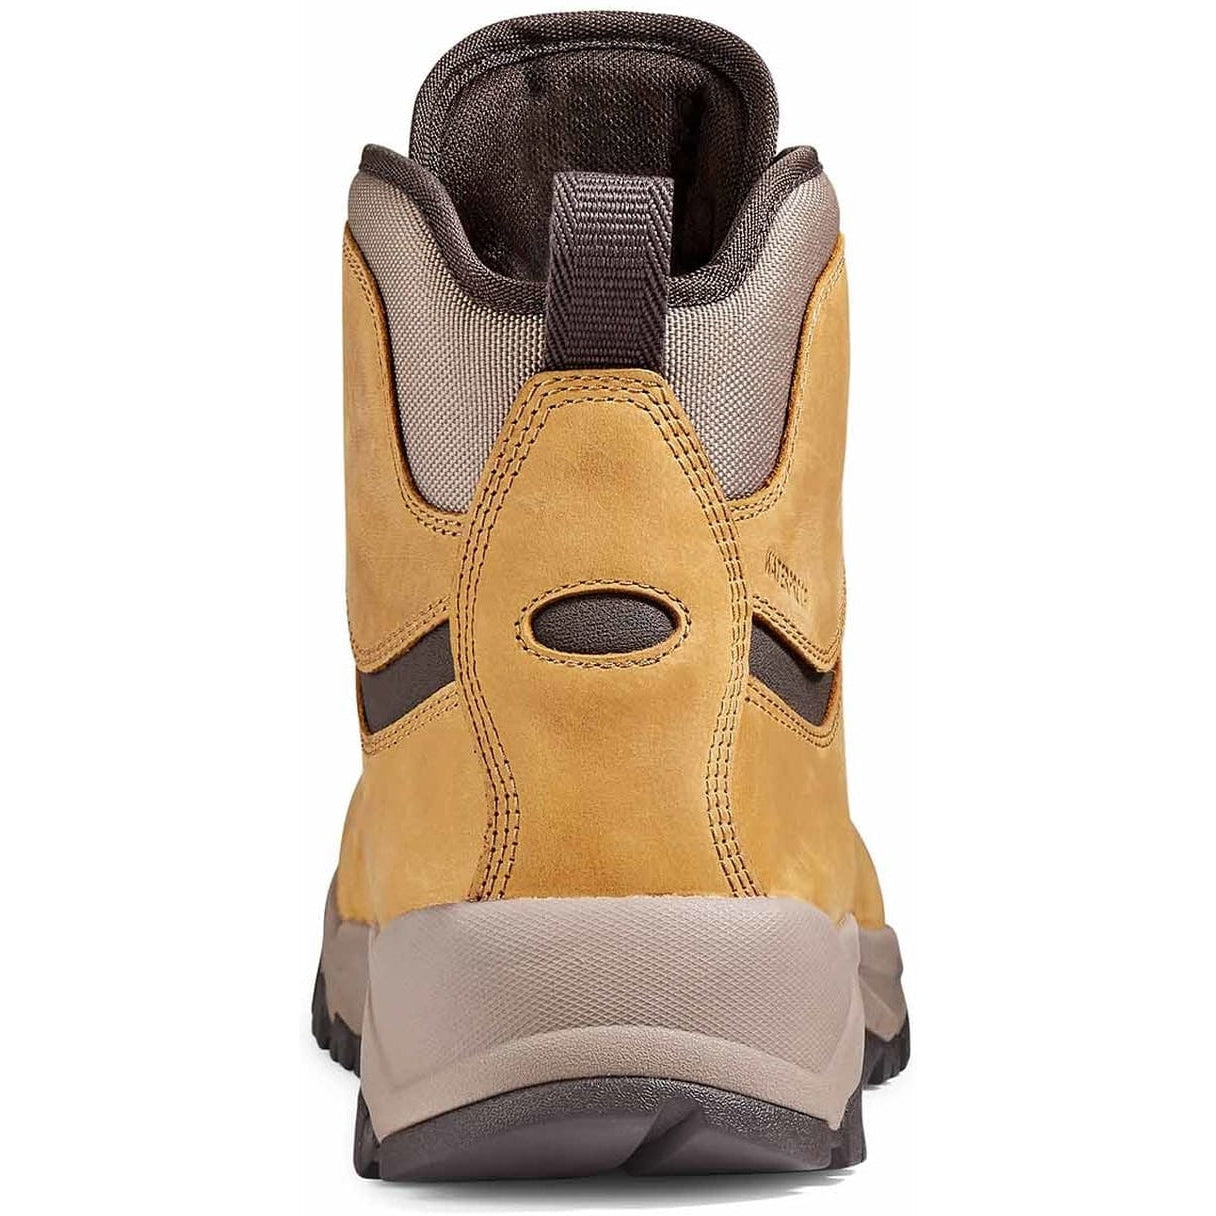 Kodiak Men's Comox Soft Toe Waterproof Lace Up Outdoor Boot -Wheat- 4TE2WT  - Overlook Boots